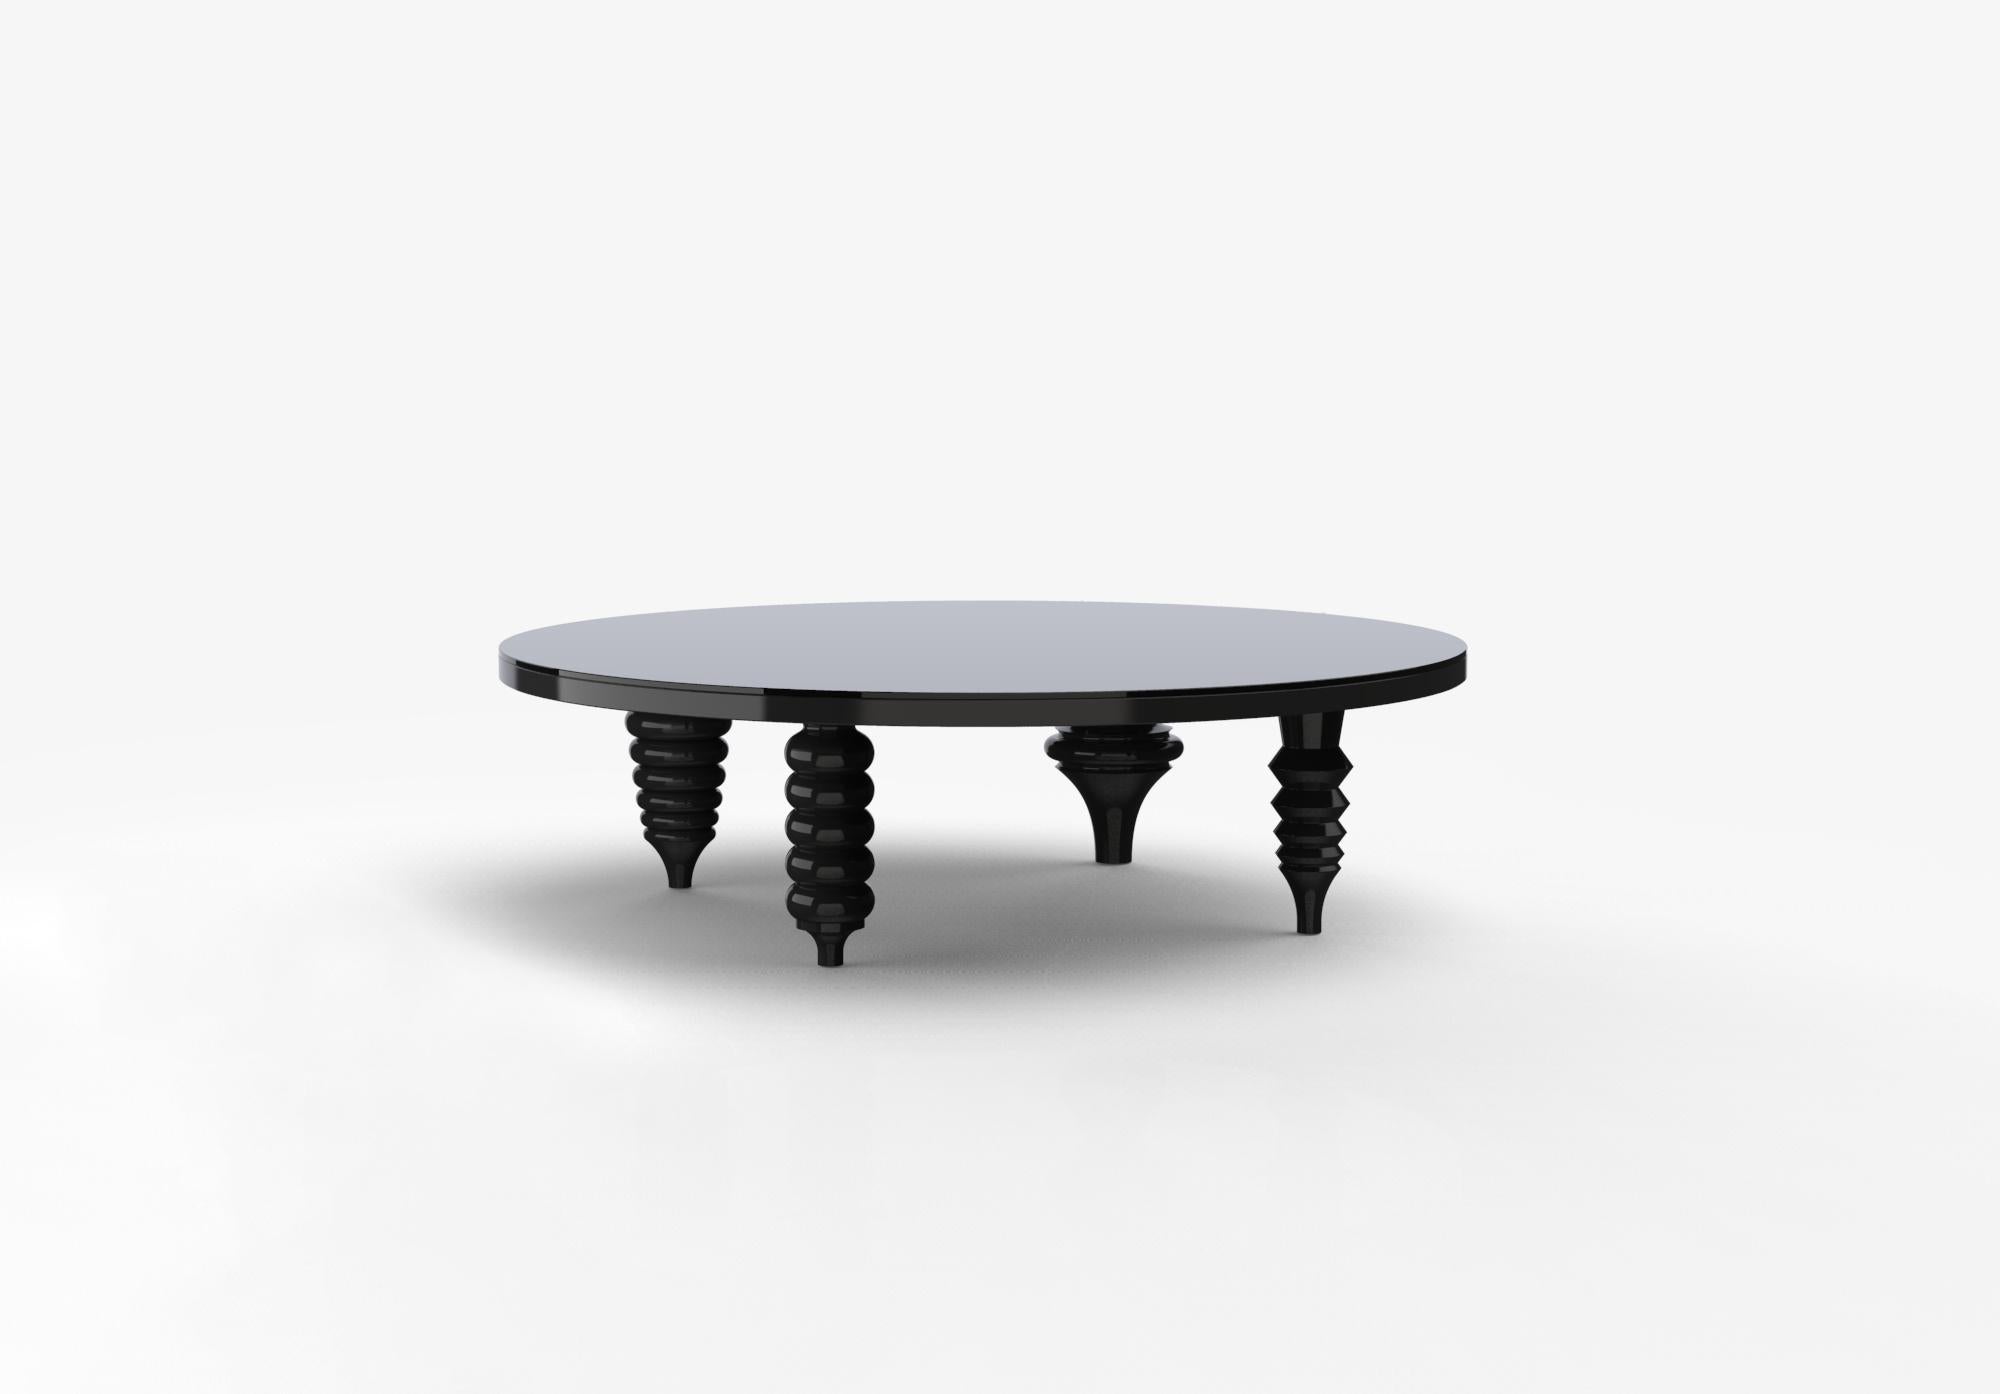 Der Multileg-Tisch entstand auf naheliegende Weise aus dem Multileg-Schrank. Mit denselben Beinen entwarf Jaime vier Tischplatten und verwandelte sie in funktionale skulpturale Mittelstücke.

Sockel aus MDF. Glasplatte von 8 mm auf der Unterseite